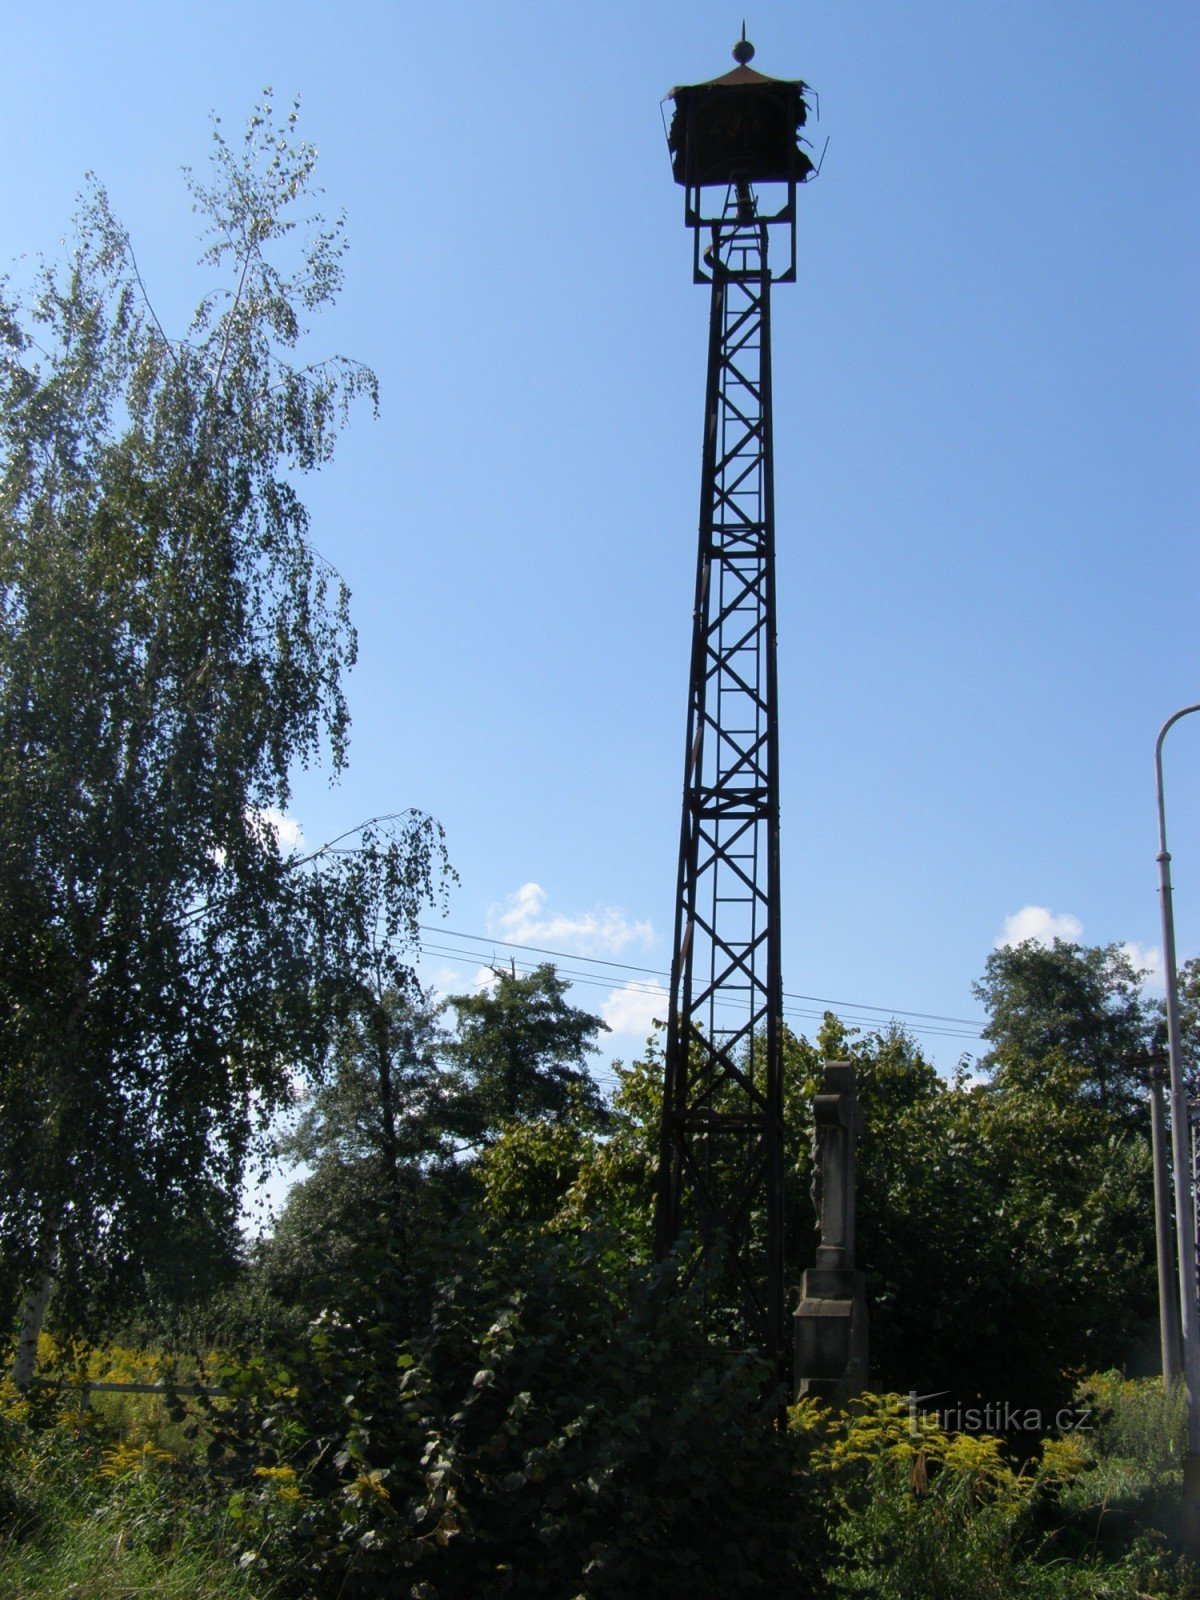 Градец Кралове - памятник распятию с колокольней в Силезском пригороде